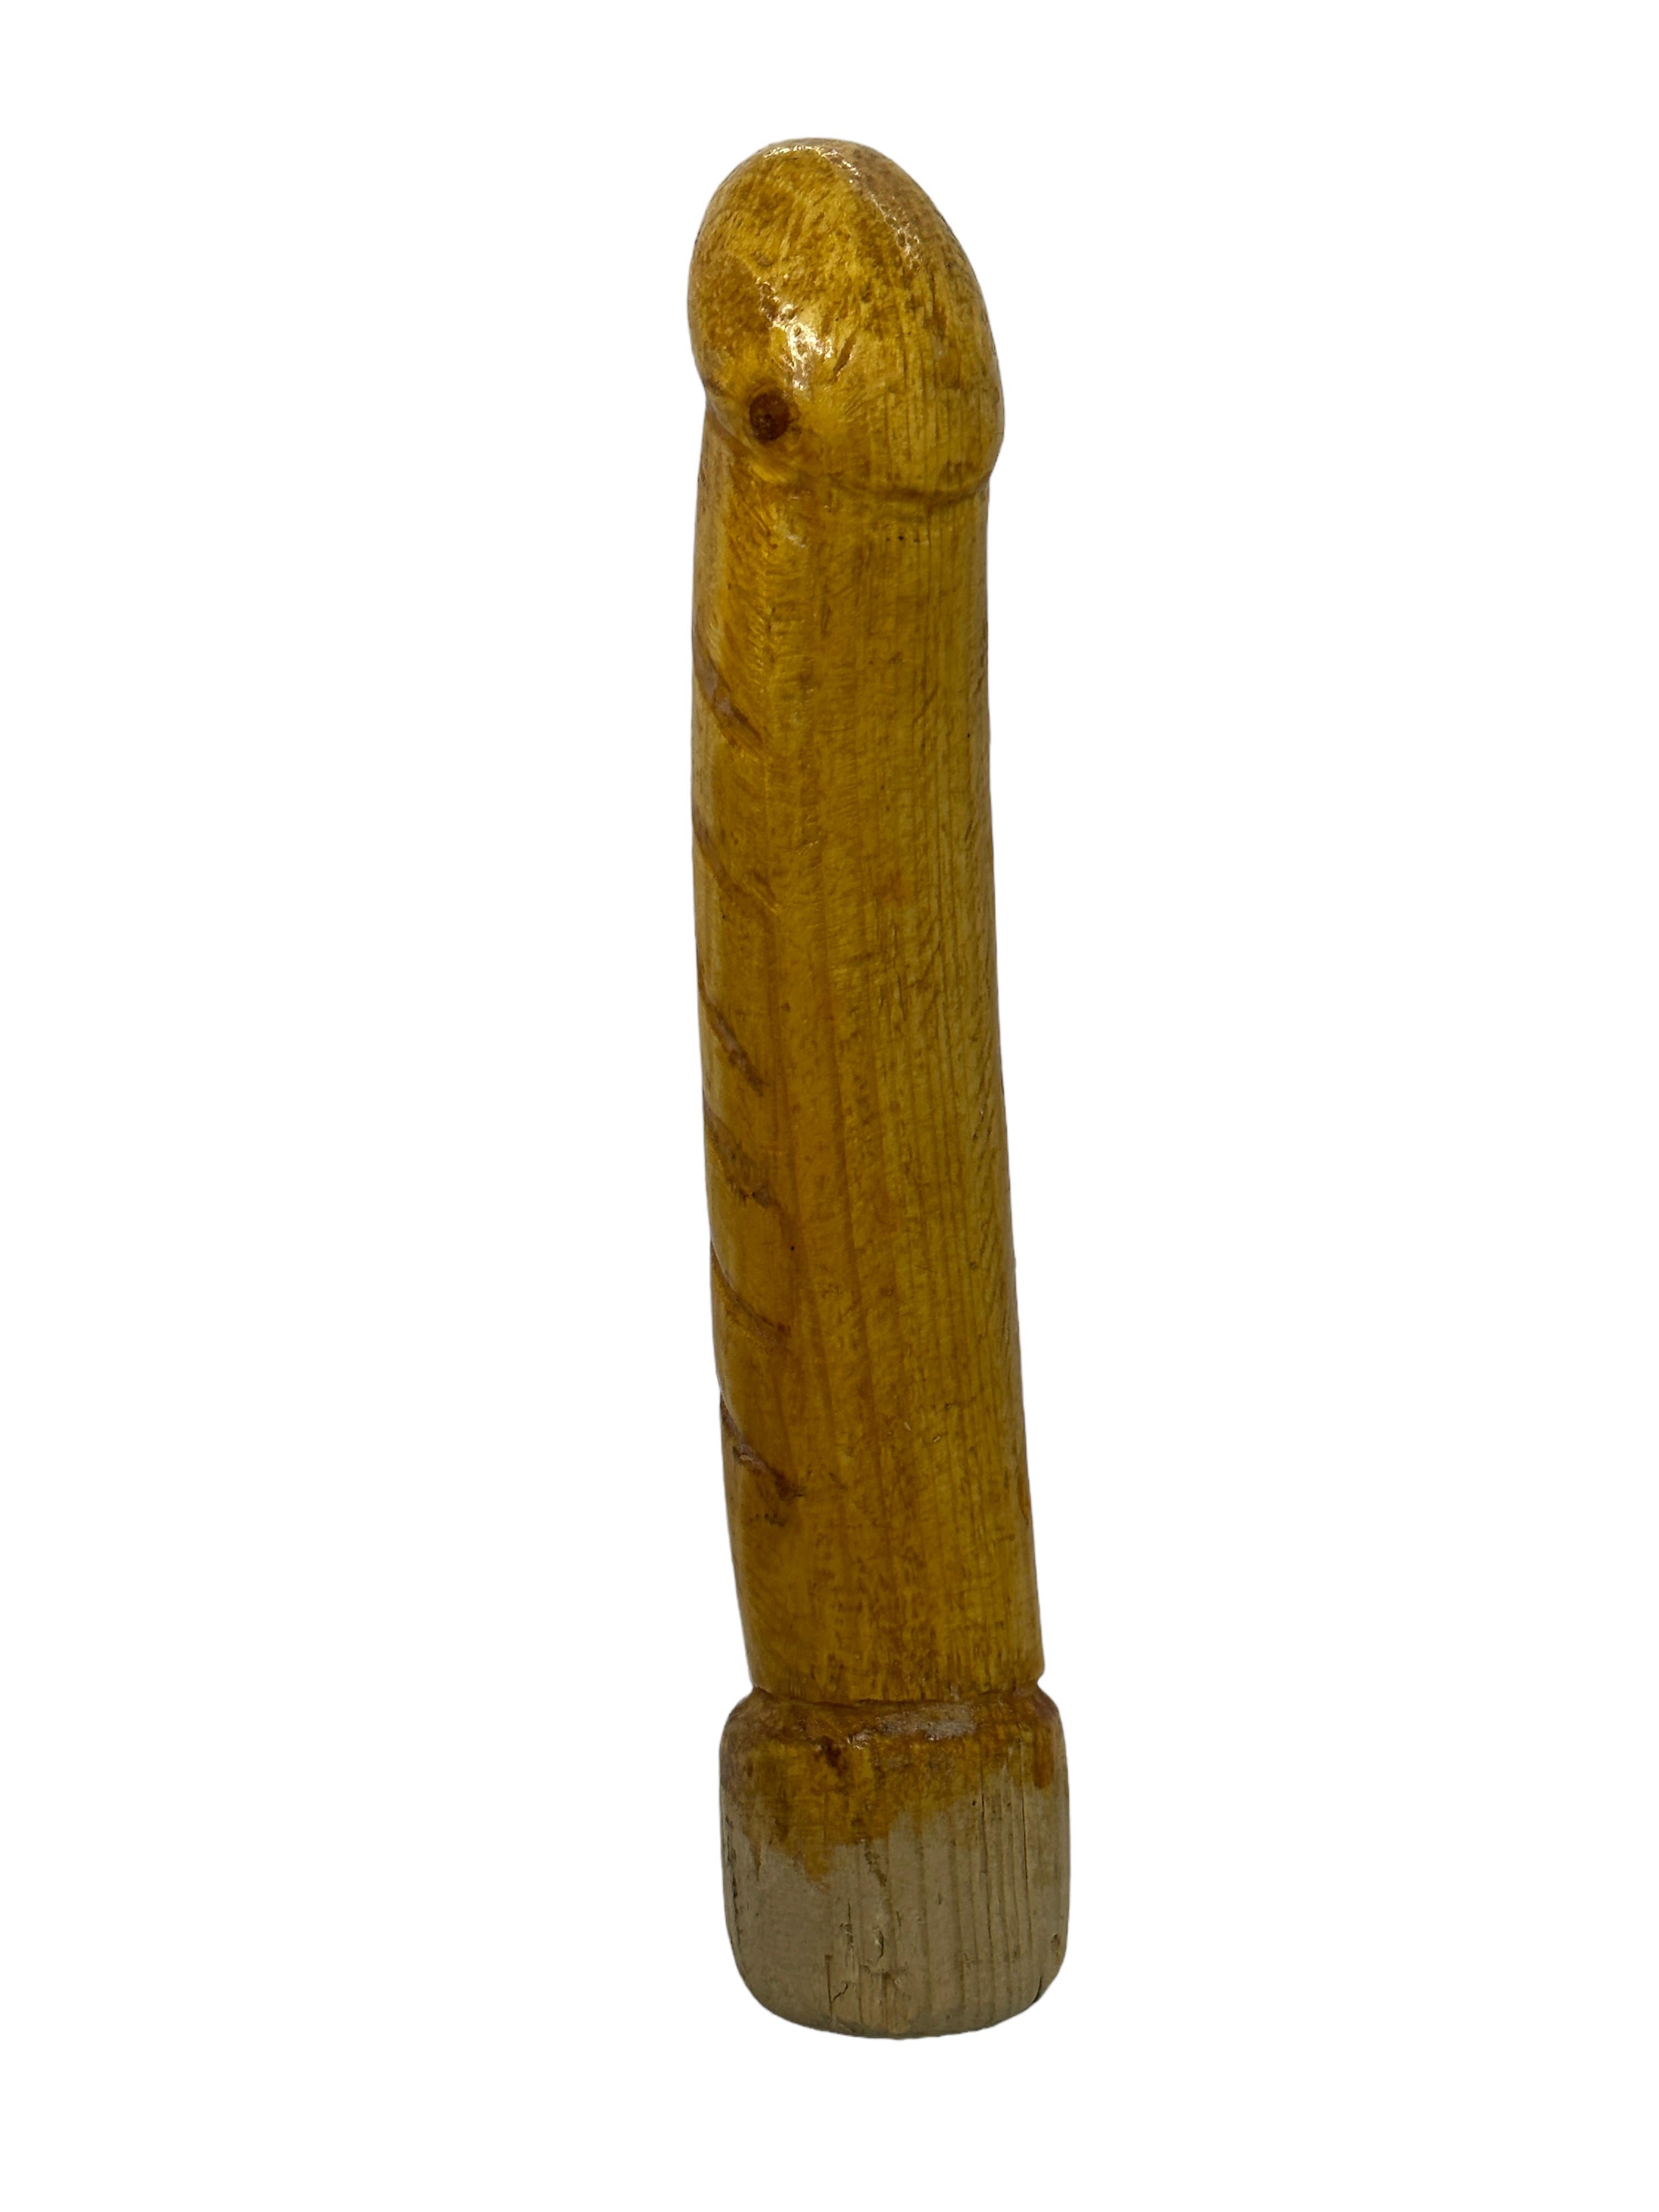 Bezaubernde, einzigartige, aus Holz geschnitzte Figur. Wir wissen nichts über den Gegenstand, glauben aber, dass er in den 1960er Jahren in Japan hergestellt wurde. Idealer Dekorationsartikel. Handgeschnitztes Holz. Ein schönes Ausstellungsstück für